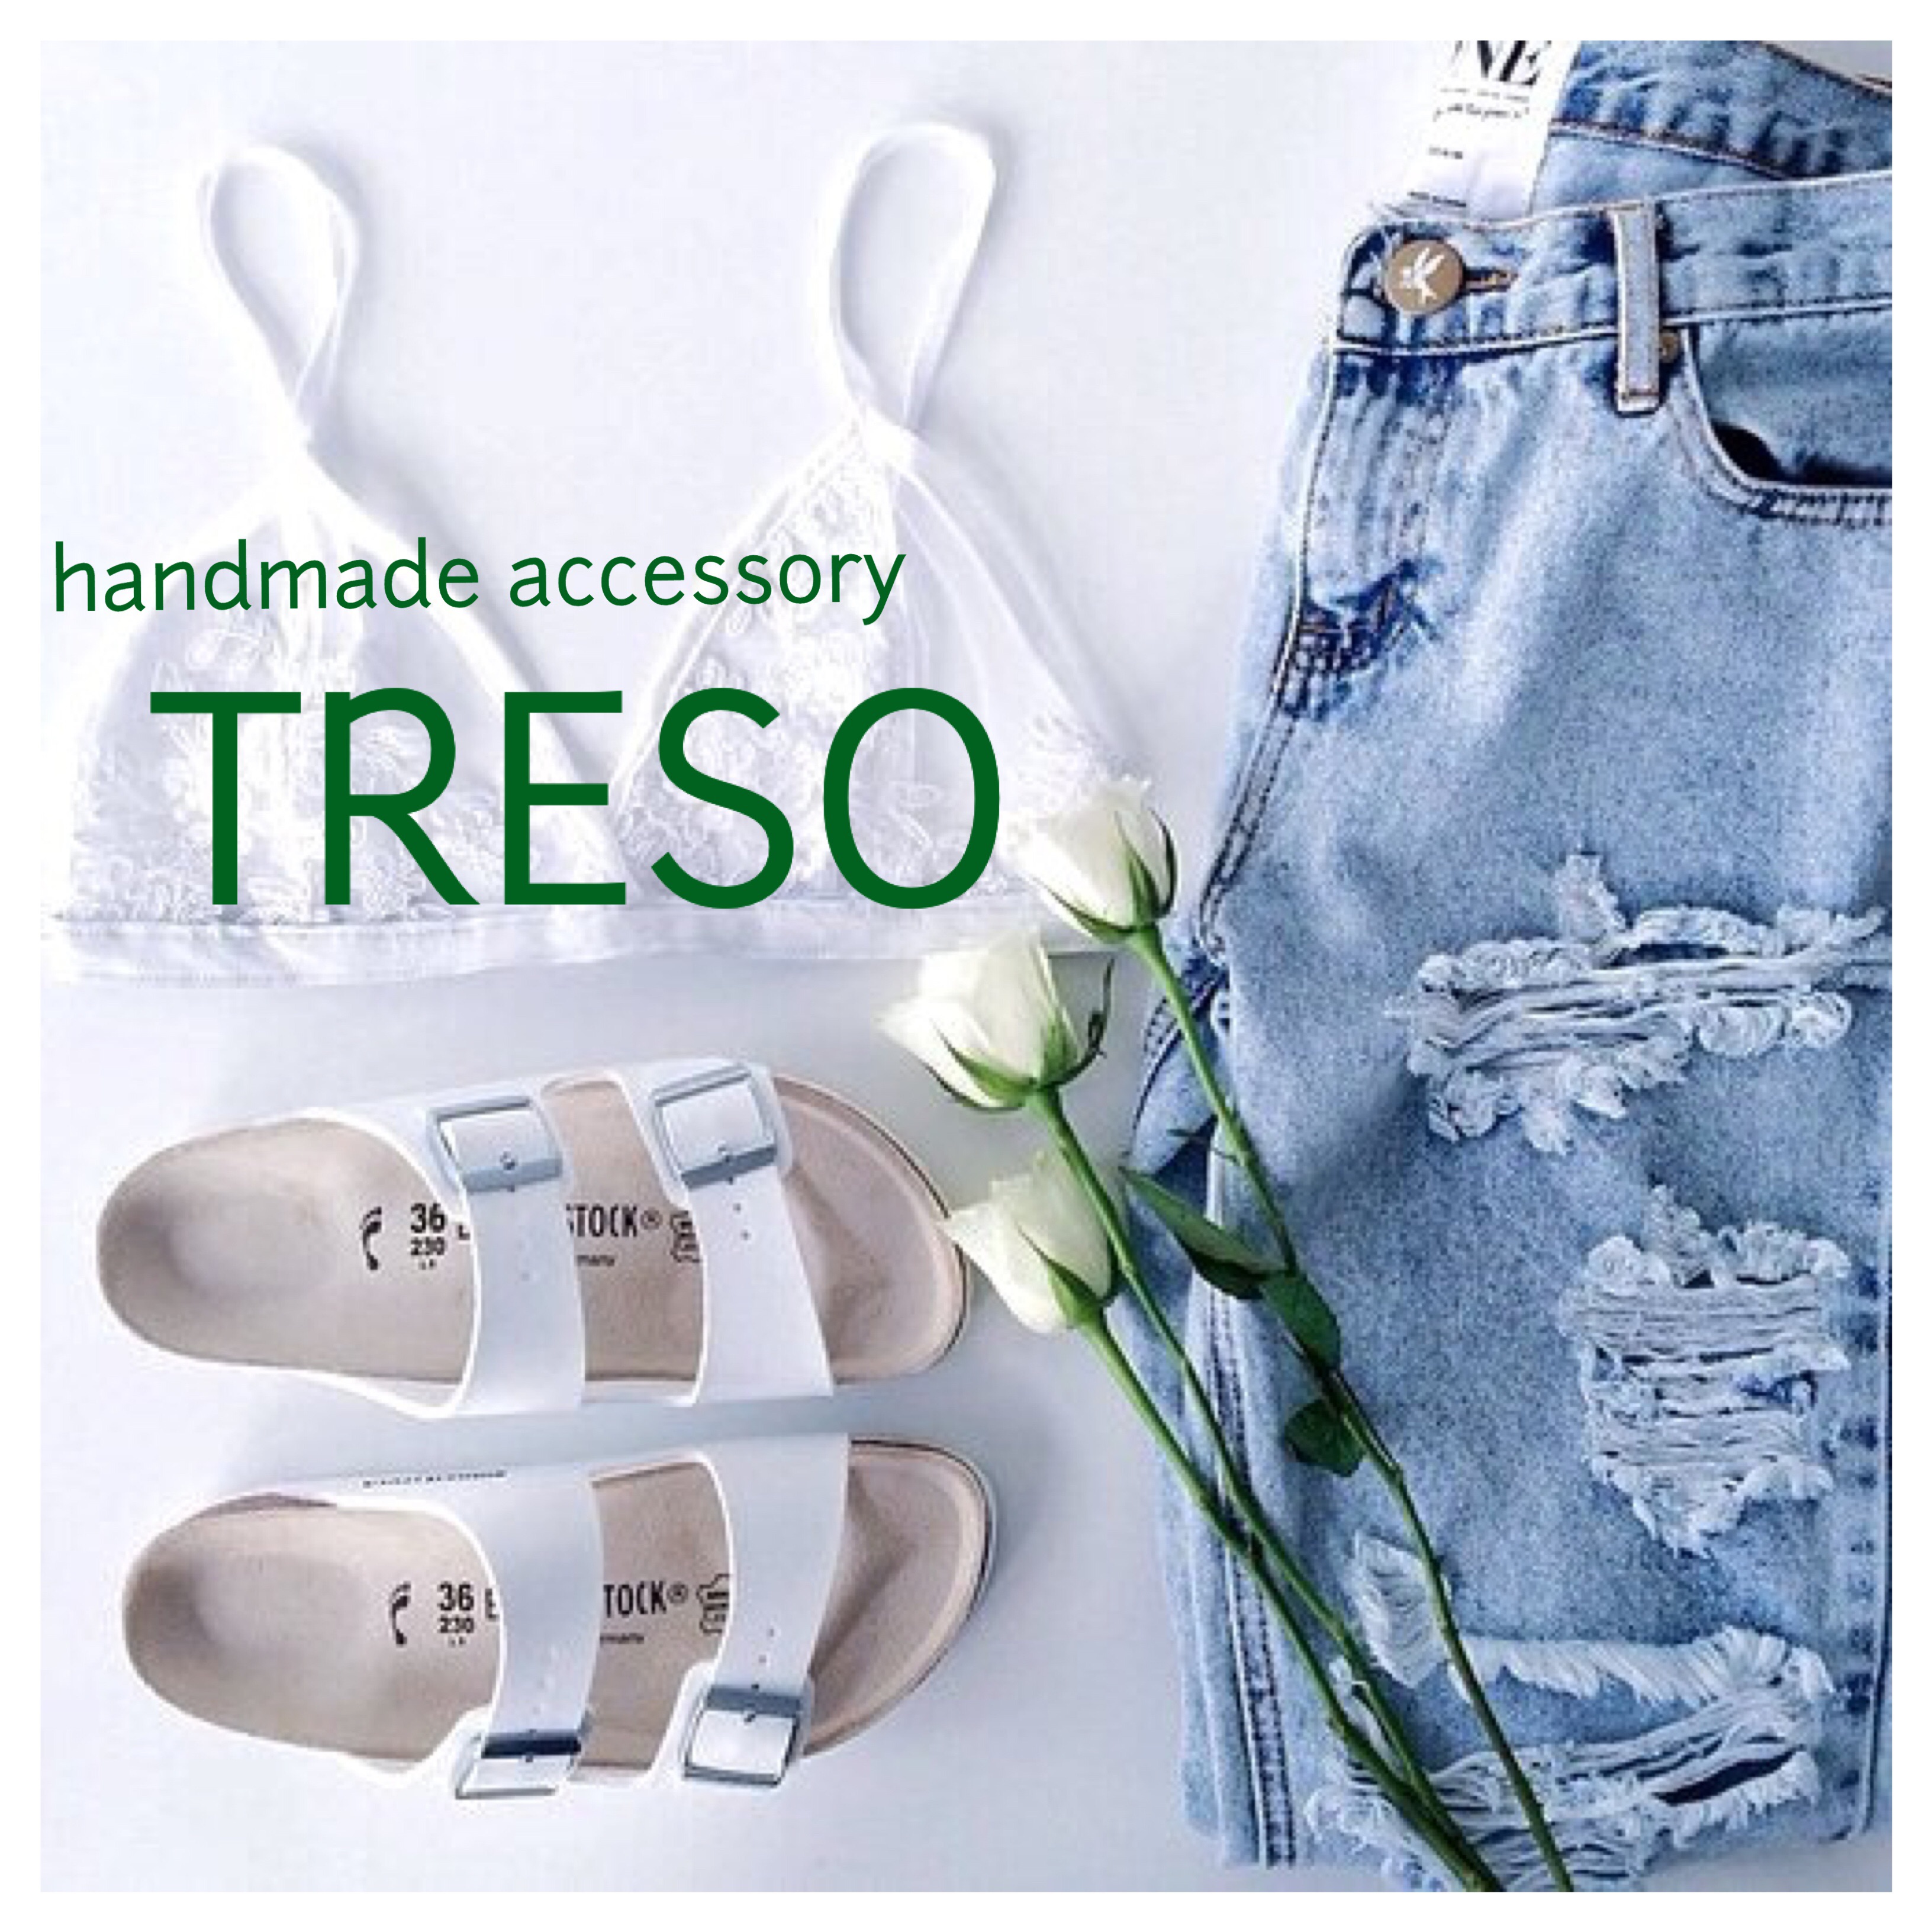 TRESO handmade accessory